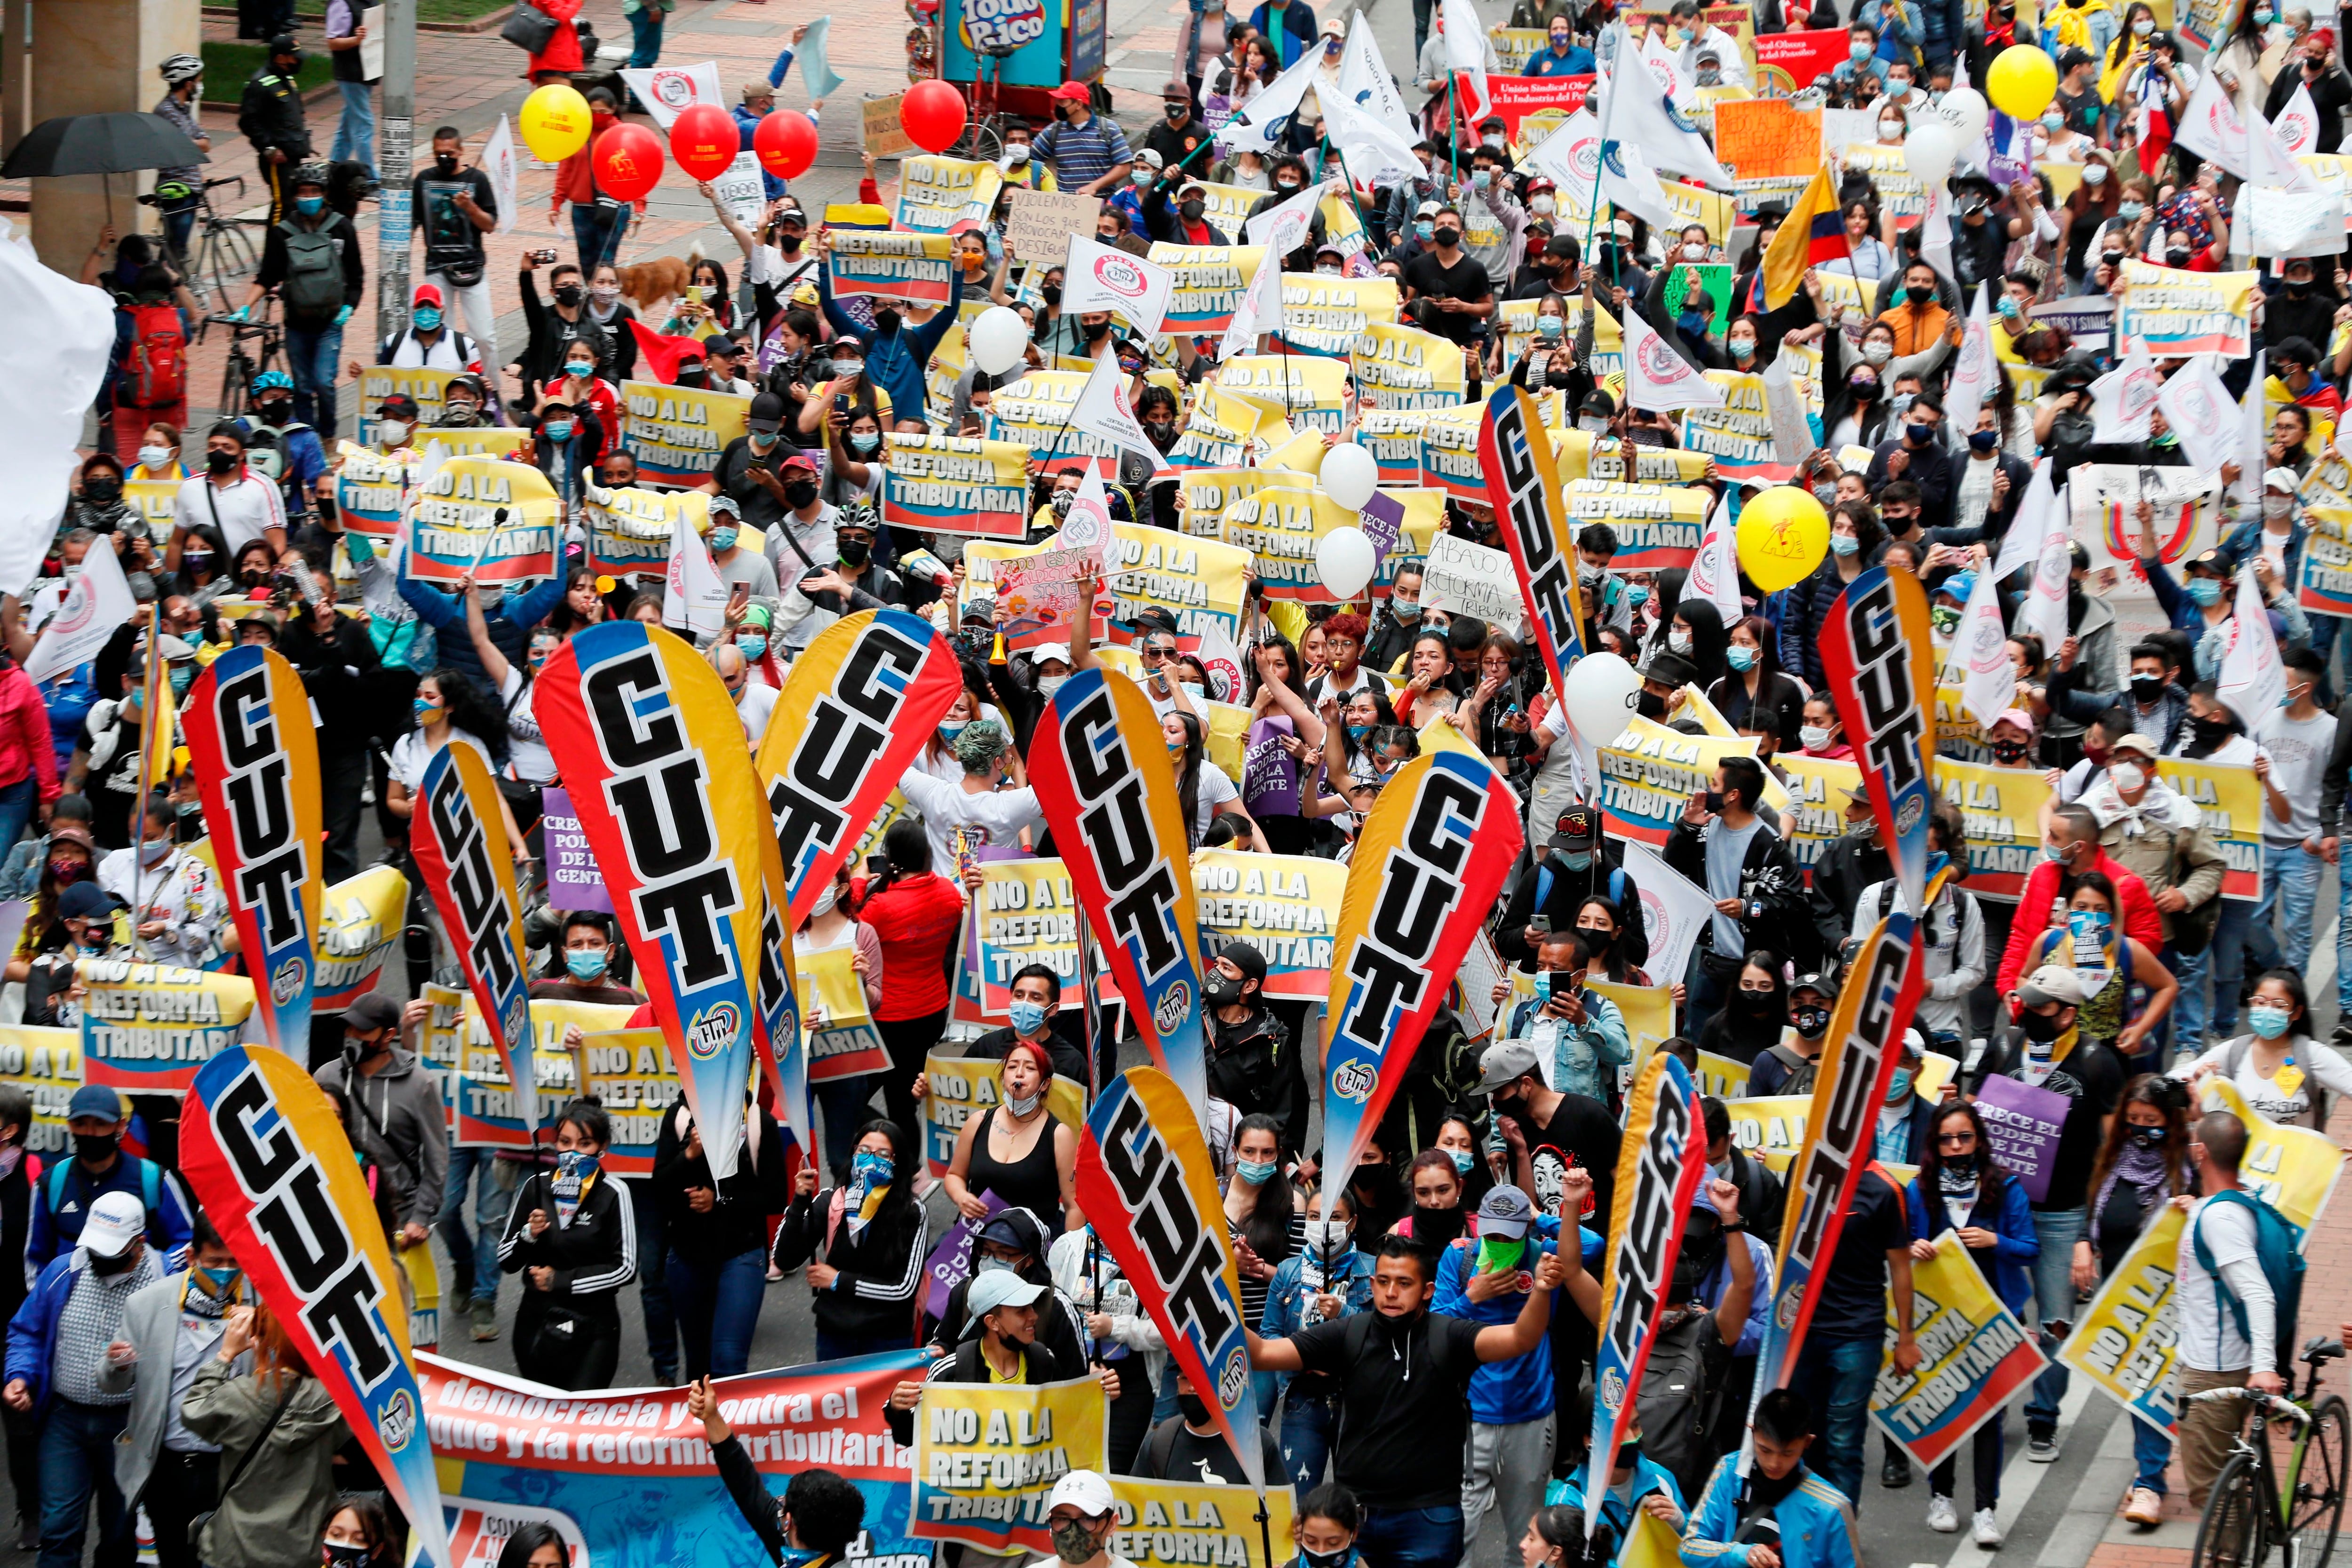 La Central Unitaria de Trabajadores de Colombia (CUT) participan en la jornada de manifestaciones denominada Paro Nacional, convocada en todo el país para rechazar, entre otros, la reforma tributaria del Gobierno - crédito Carlos Ortega/EFE
